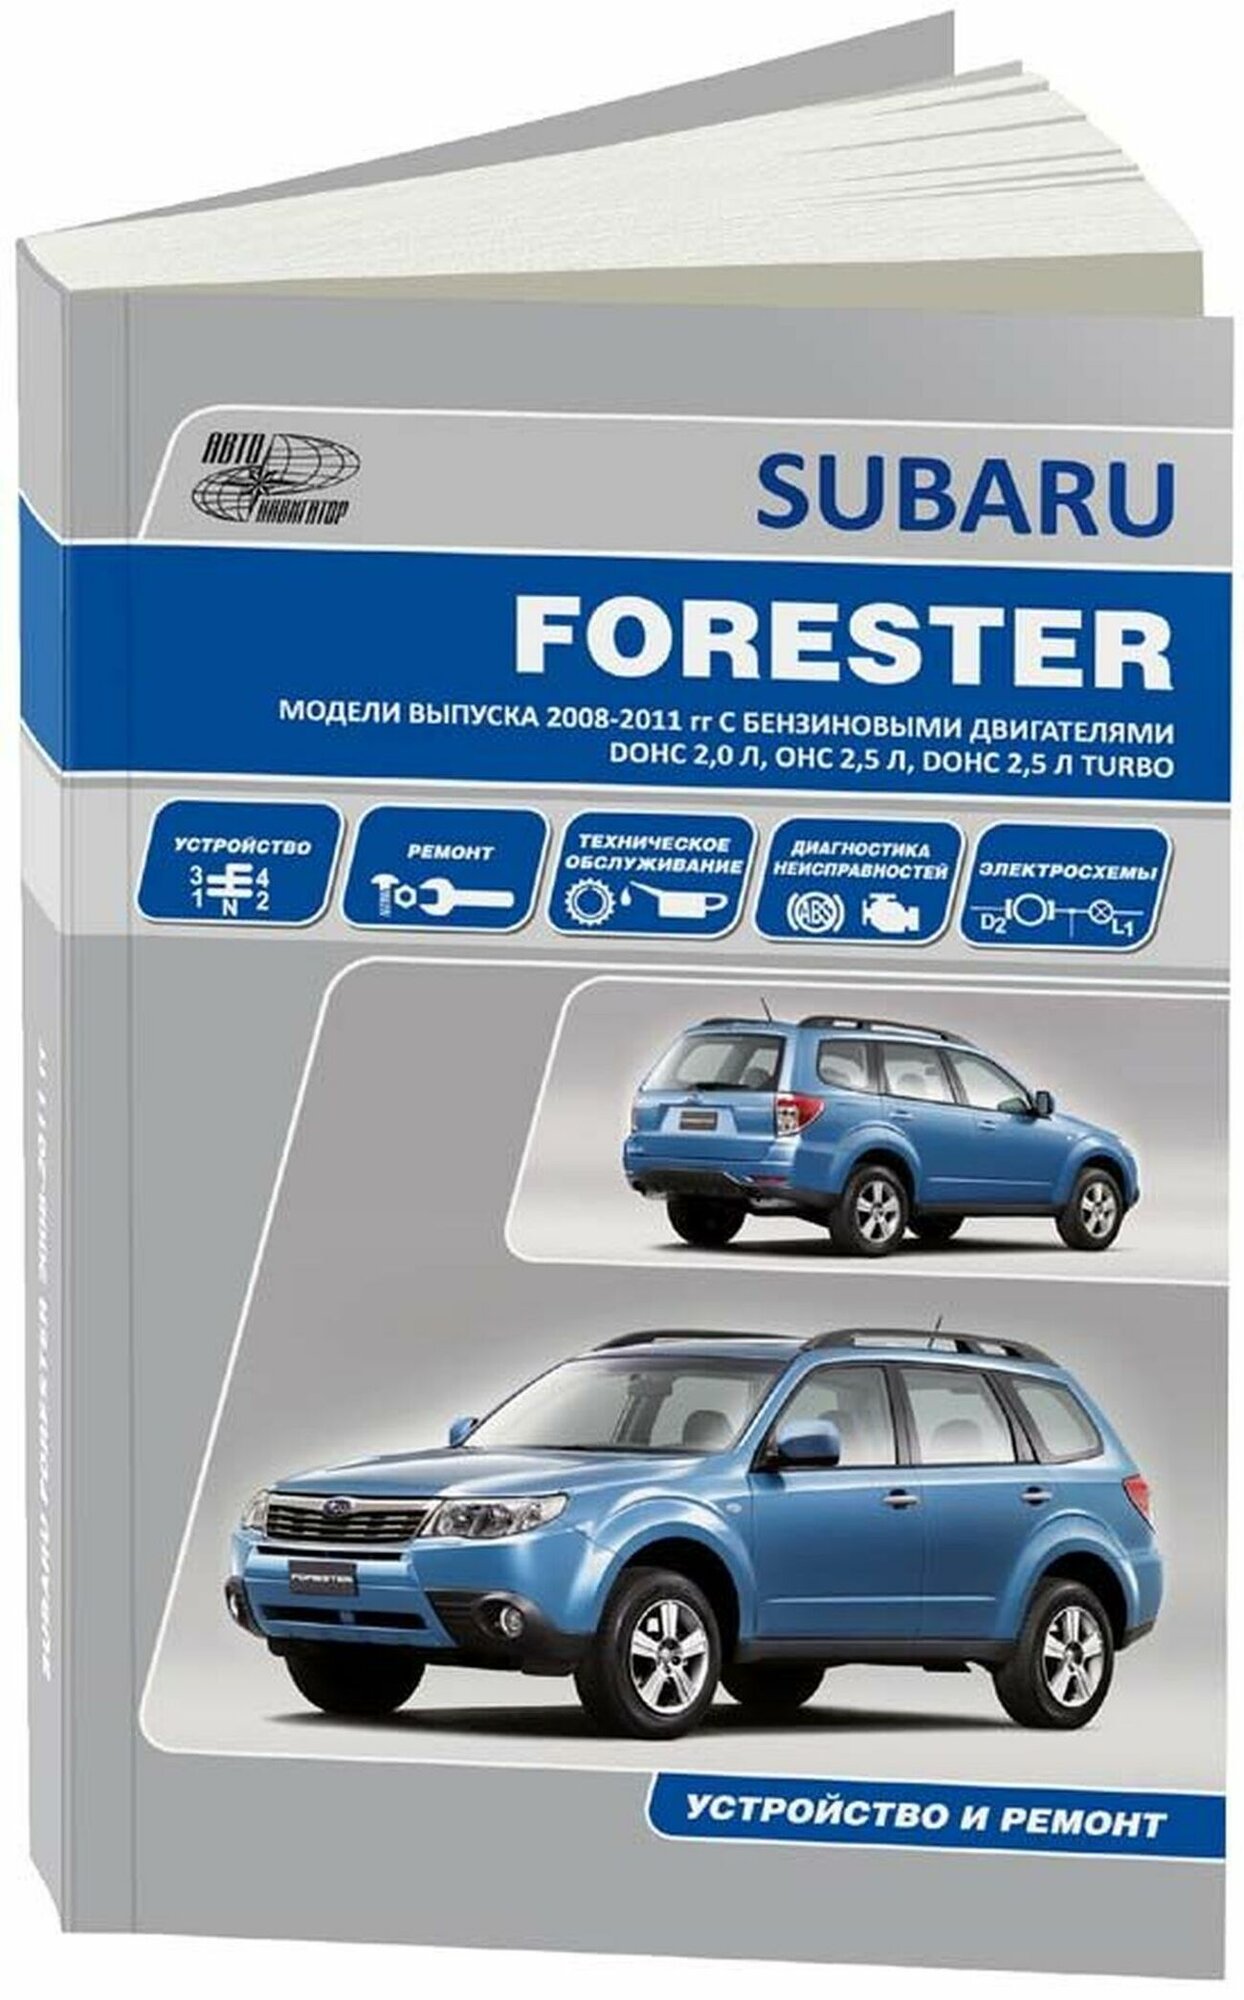 Автонавигатор "Subaru Forester. Модели выпуска 2008-2011 гг. с бензиновыми двигателями DOHC 20 л OHC 25 л DOHC 25 л Turbo. Устройство техническое обслуживание ремонт"